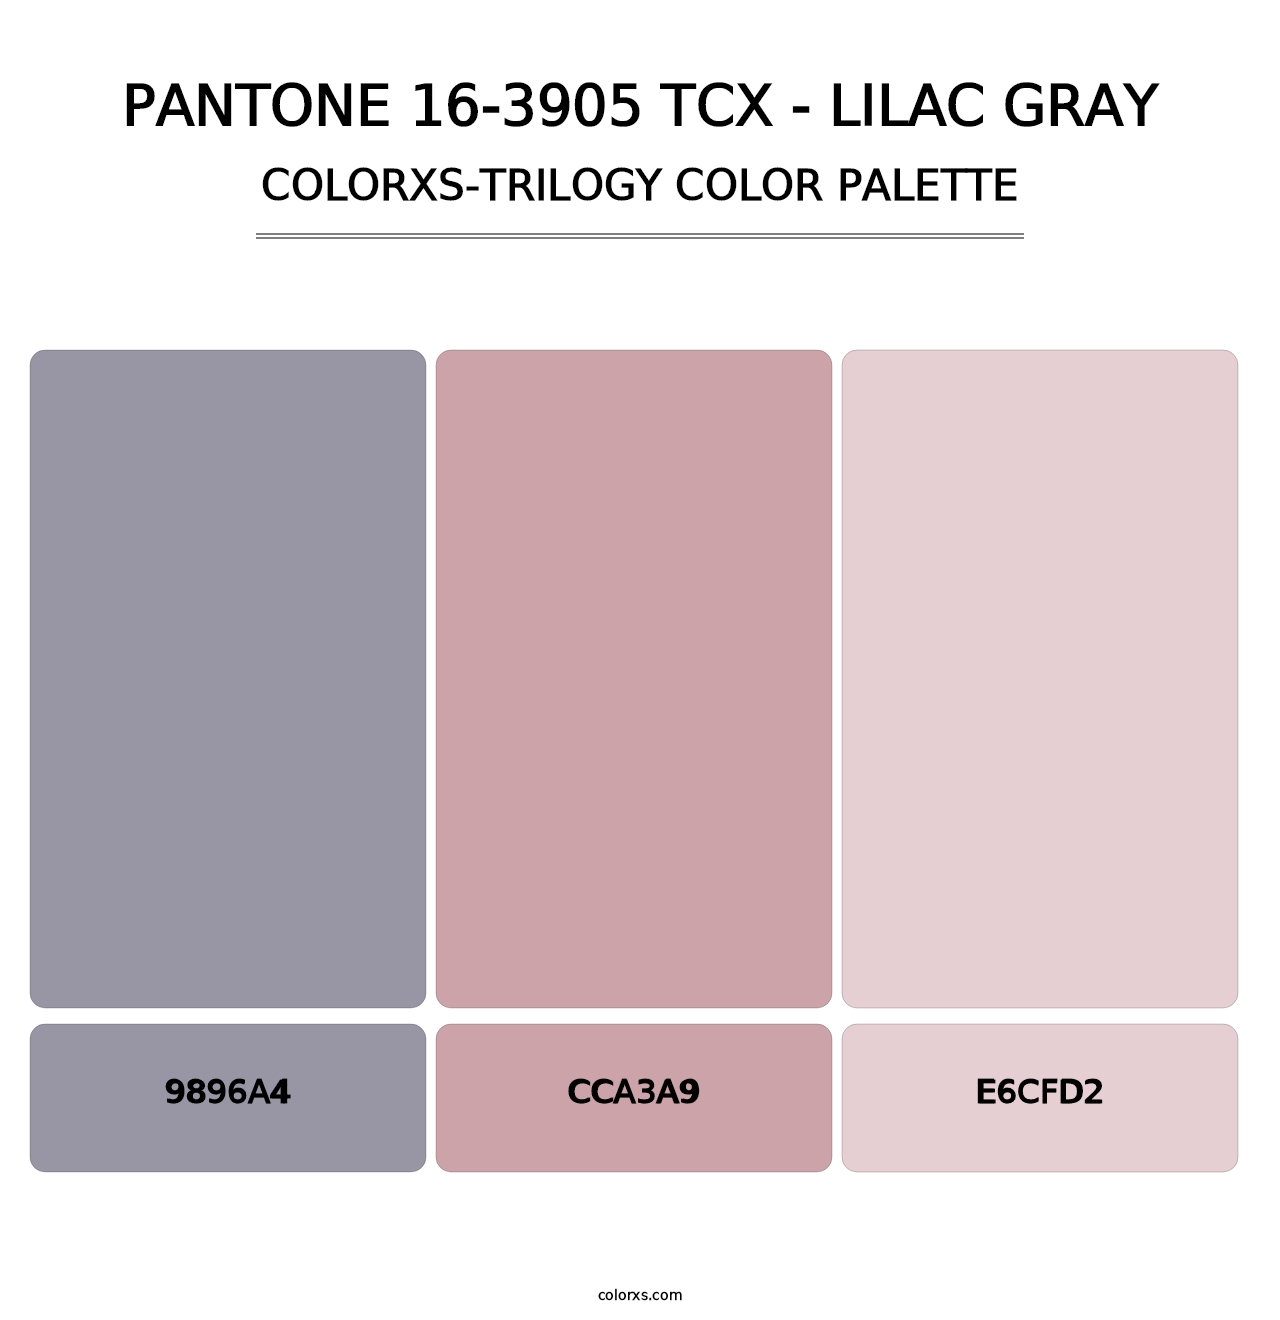 PANTONE 16-3905 TCX - Lilac Gray - Colorxs Trilogy Palette